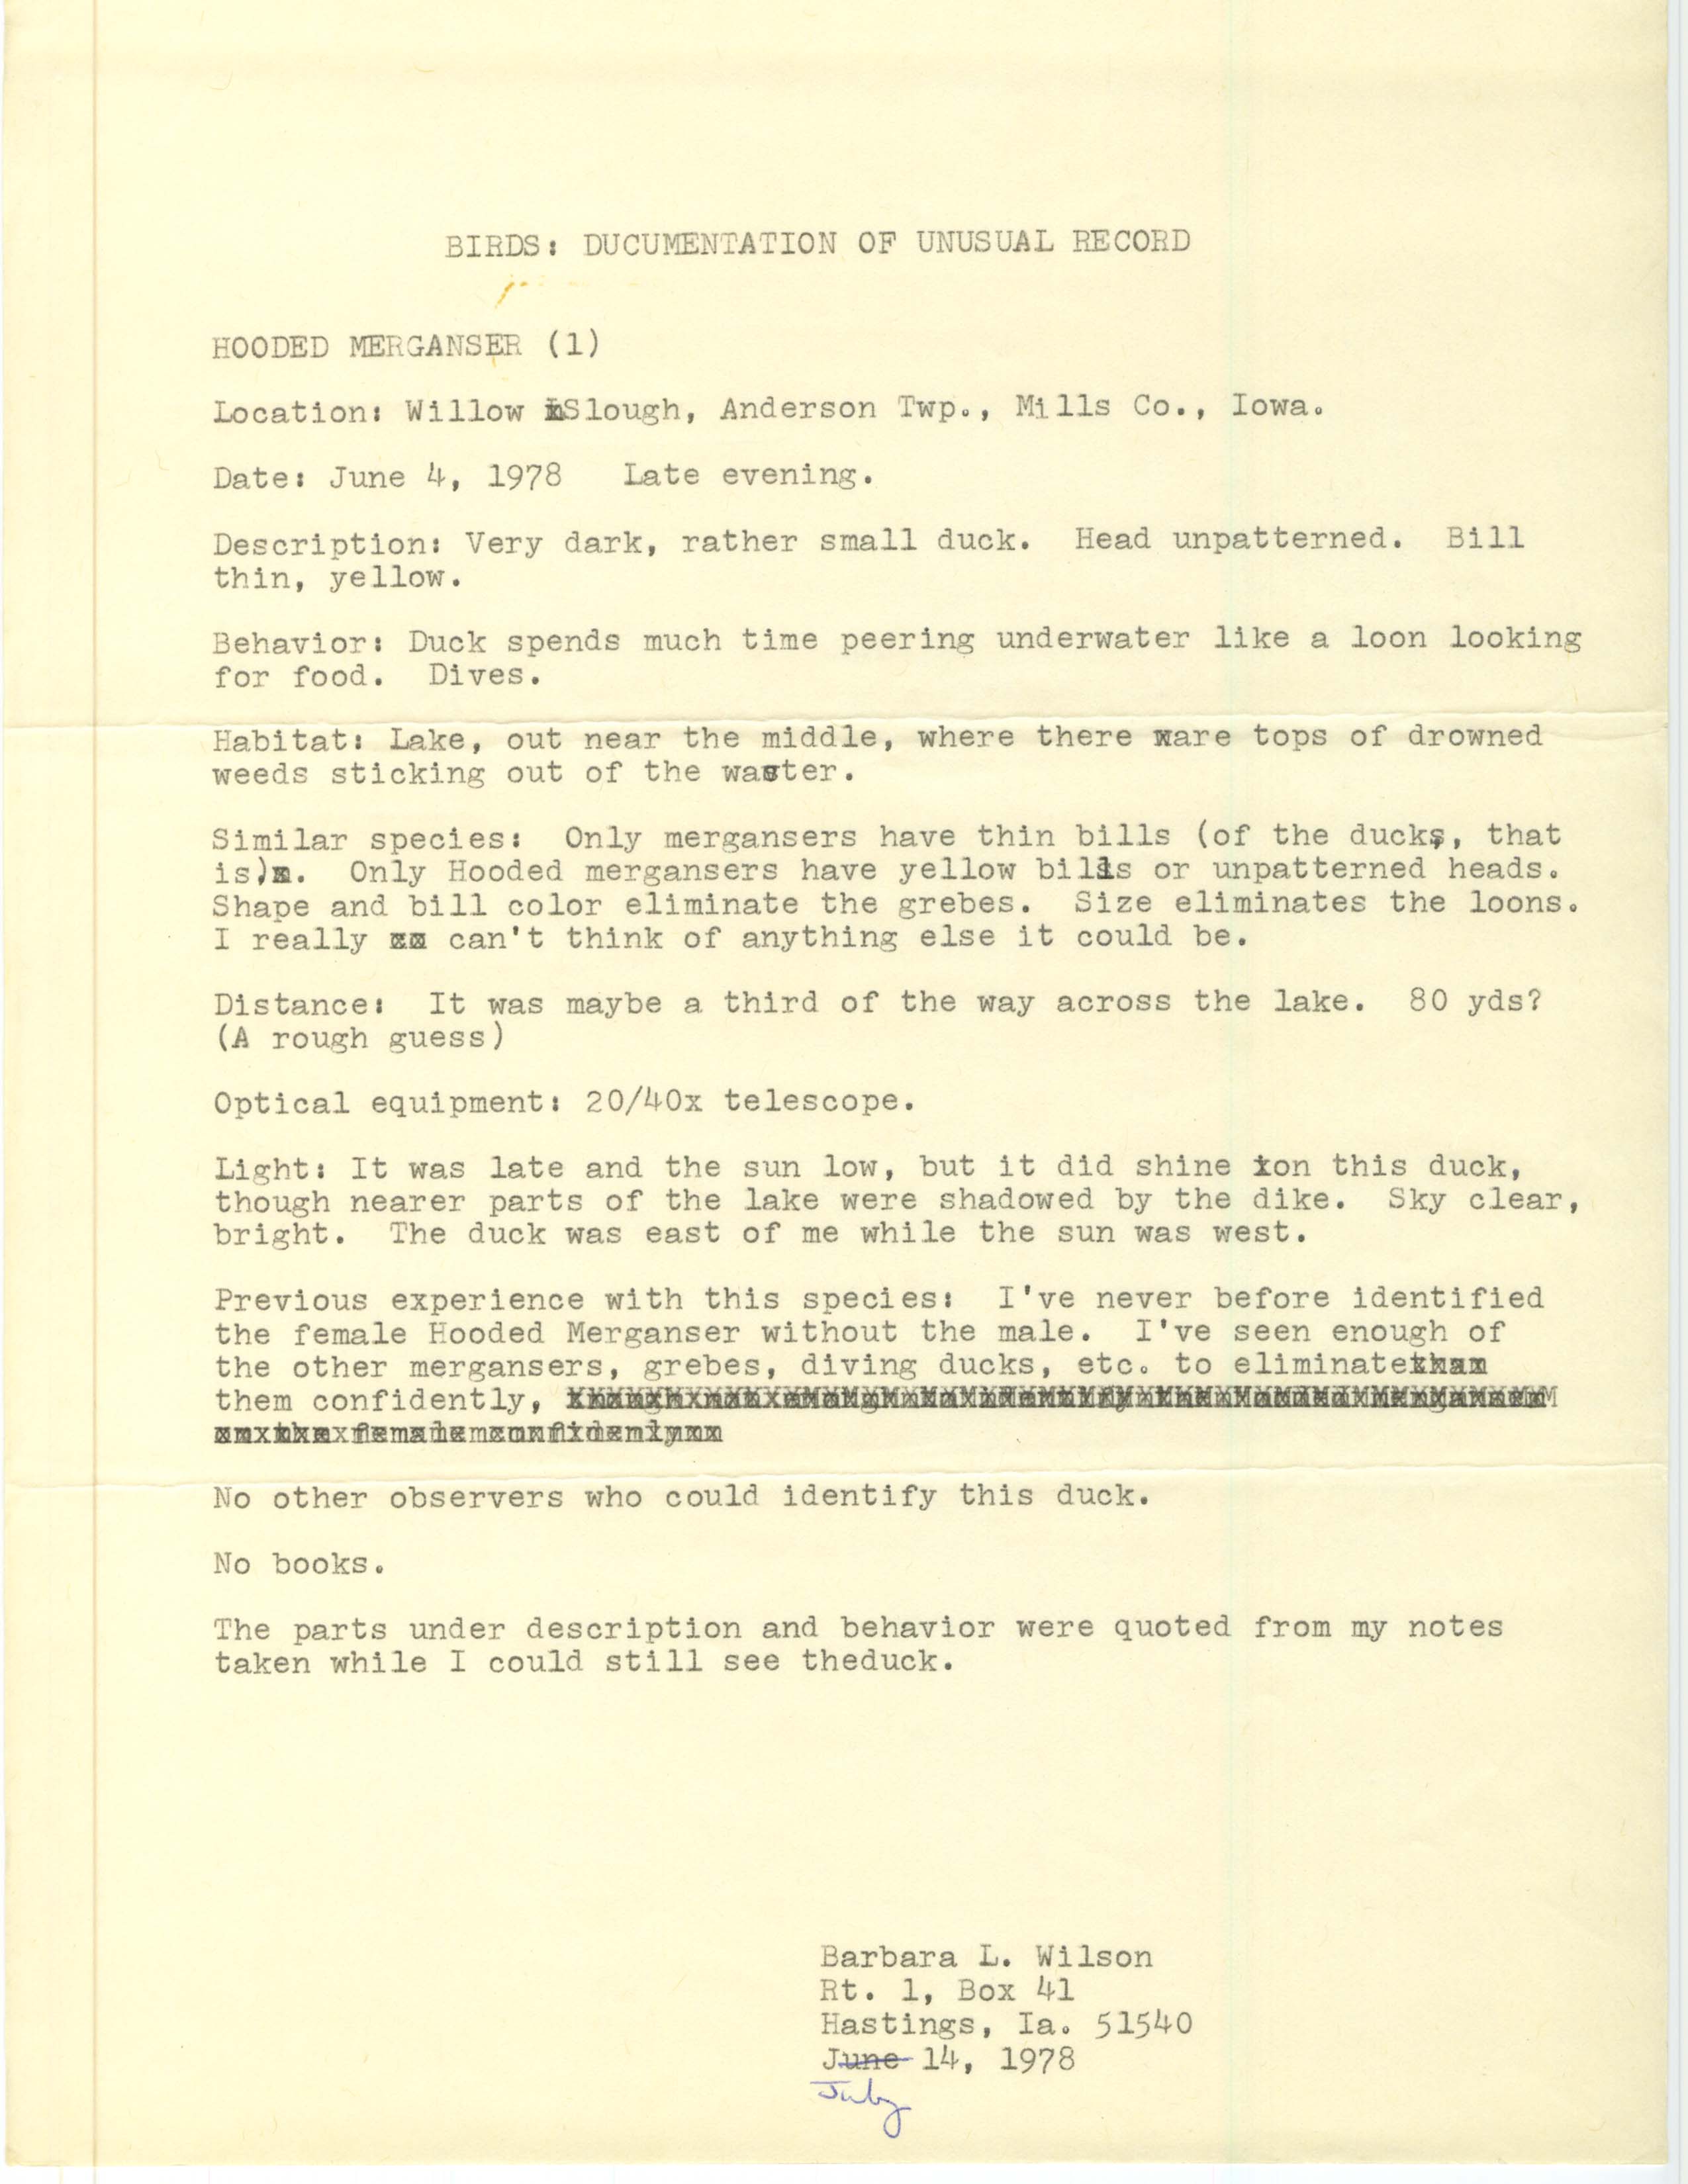 Rare bird documentation form for Hooded Merganser at Willow Slough, 1978